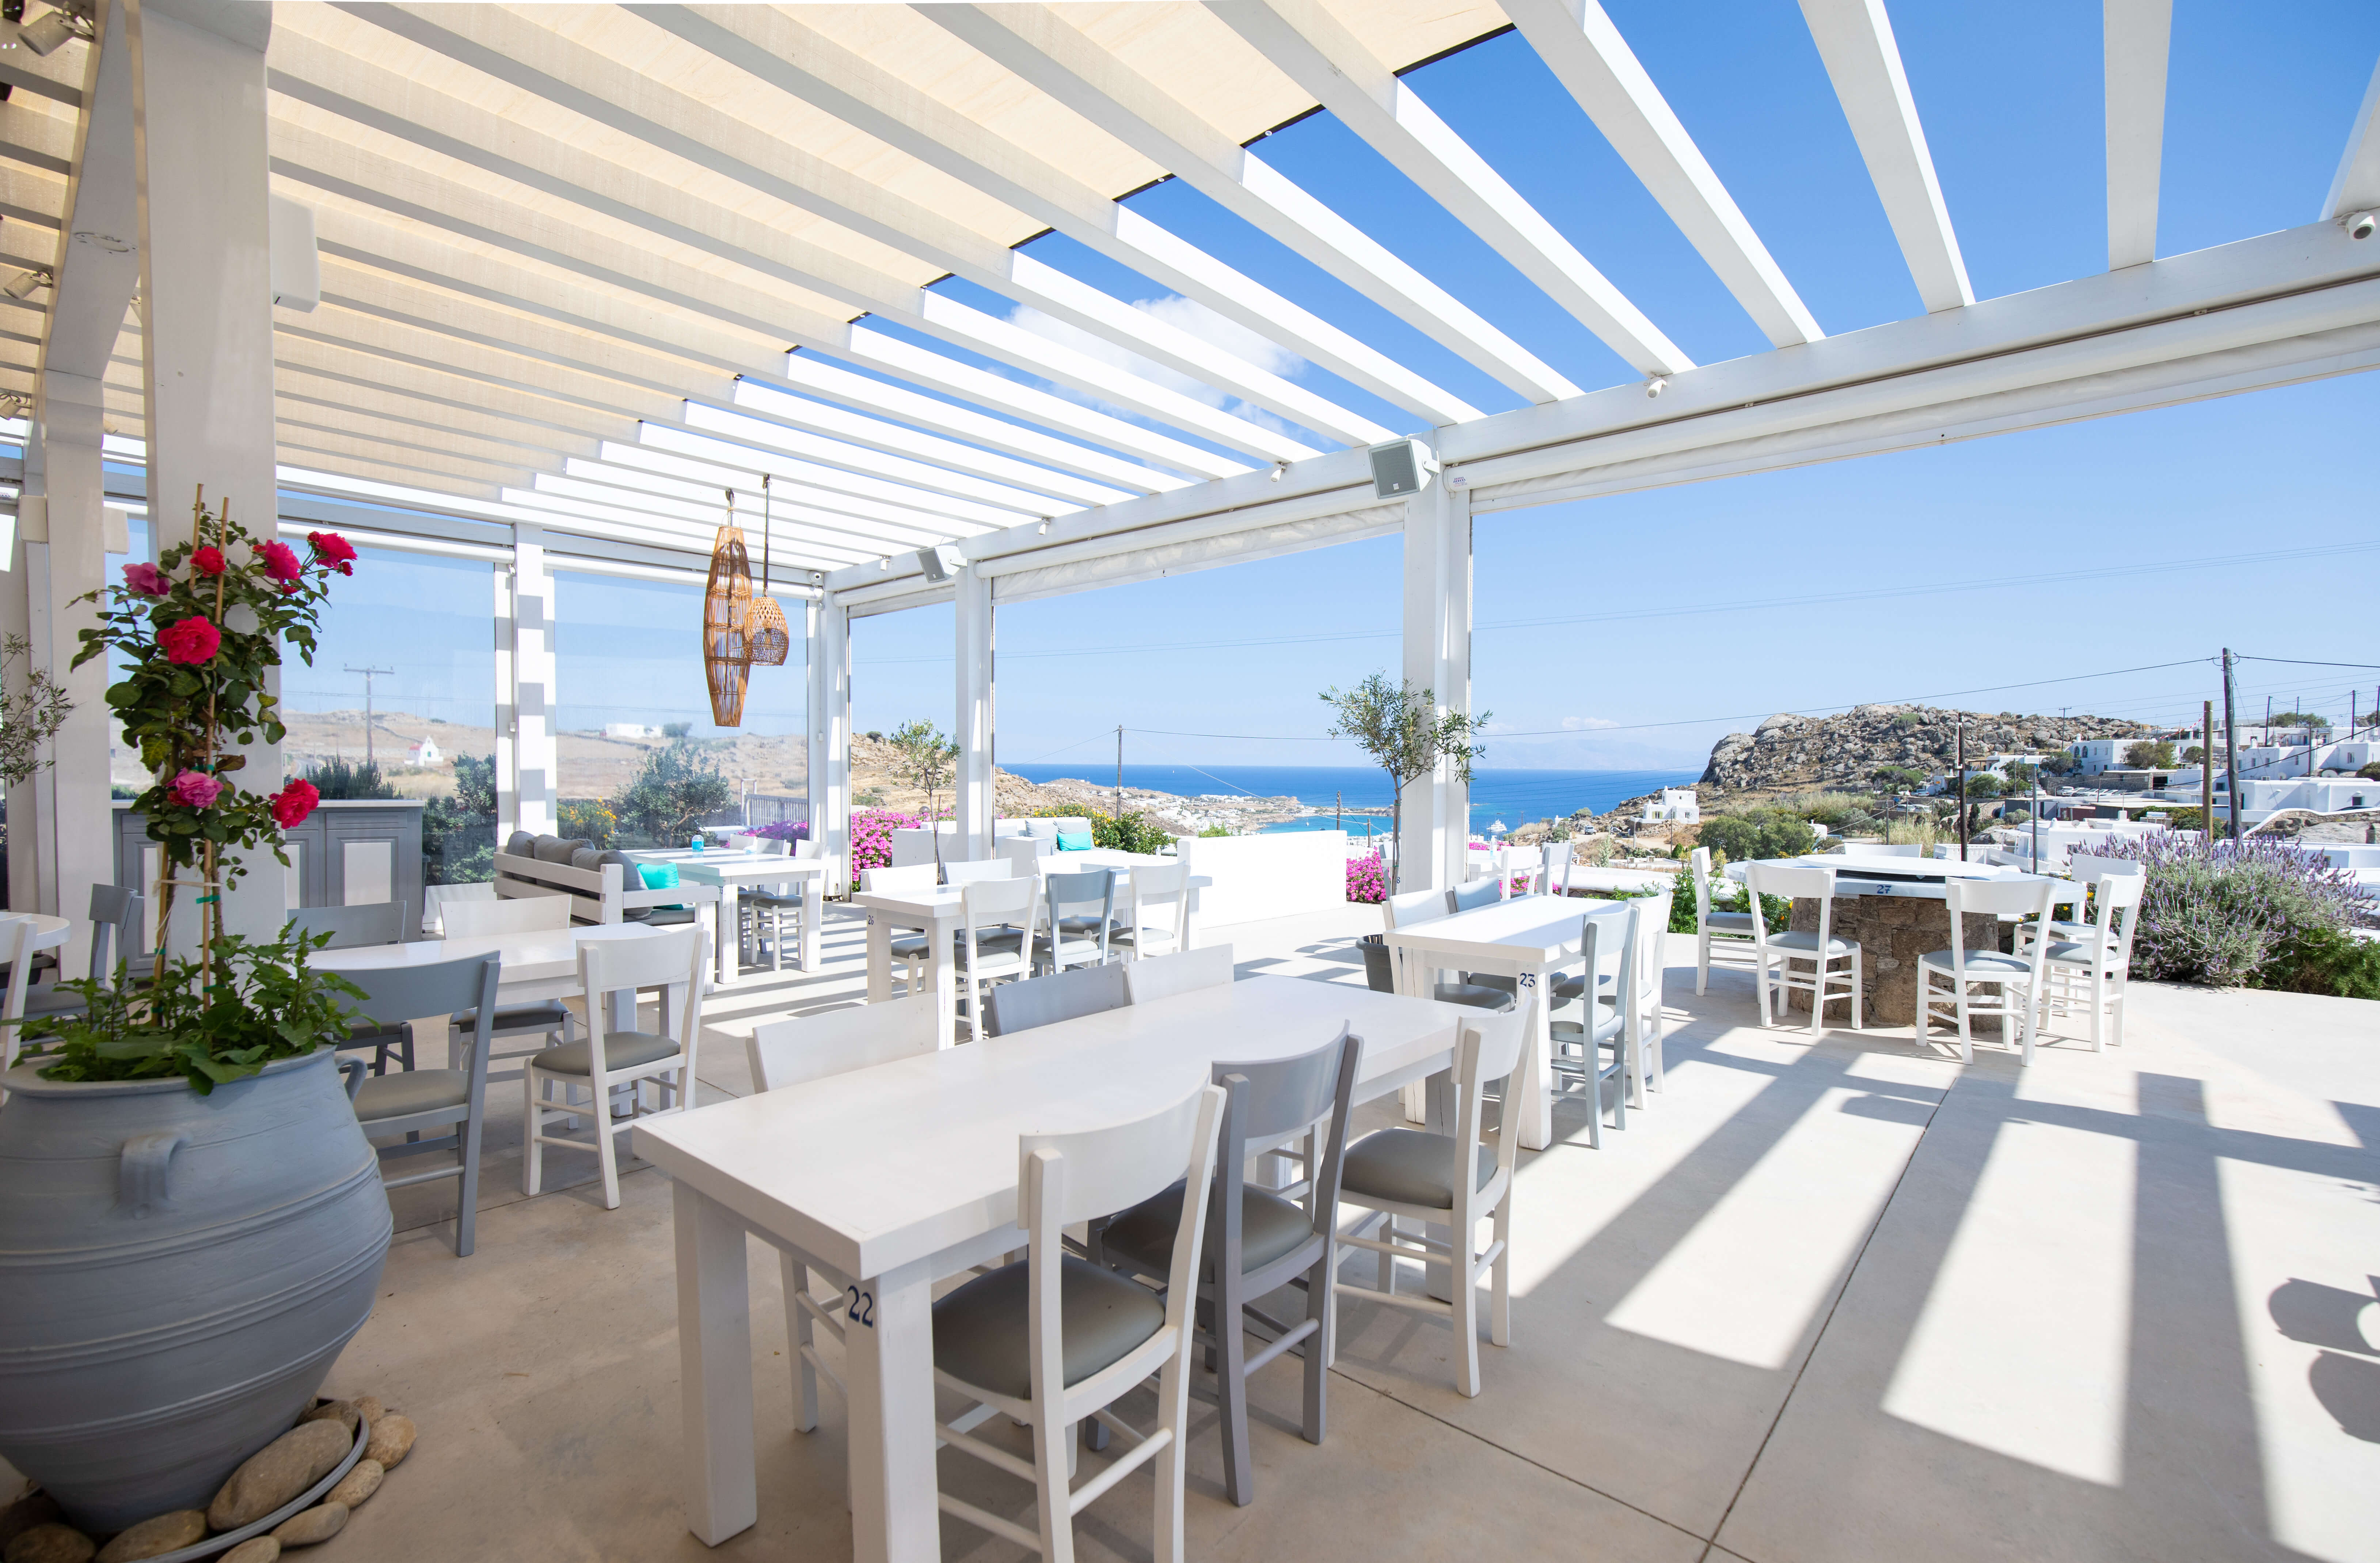 Alesta View Restaurant Mykonos - εικόνα 1